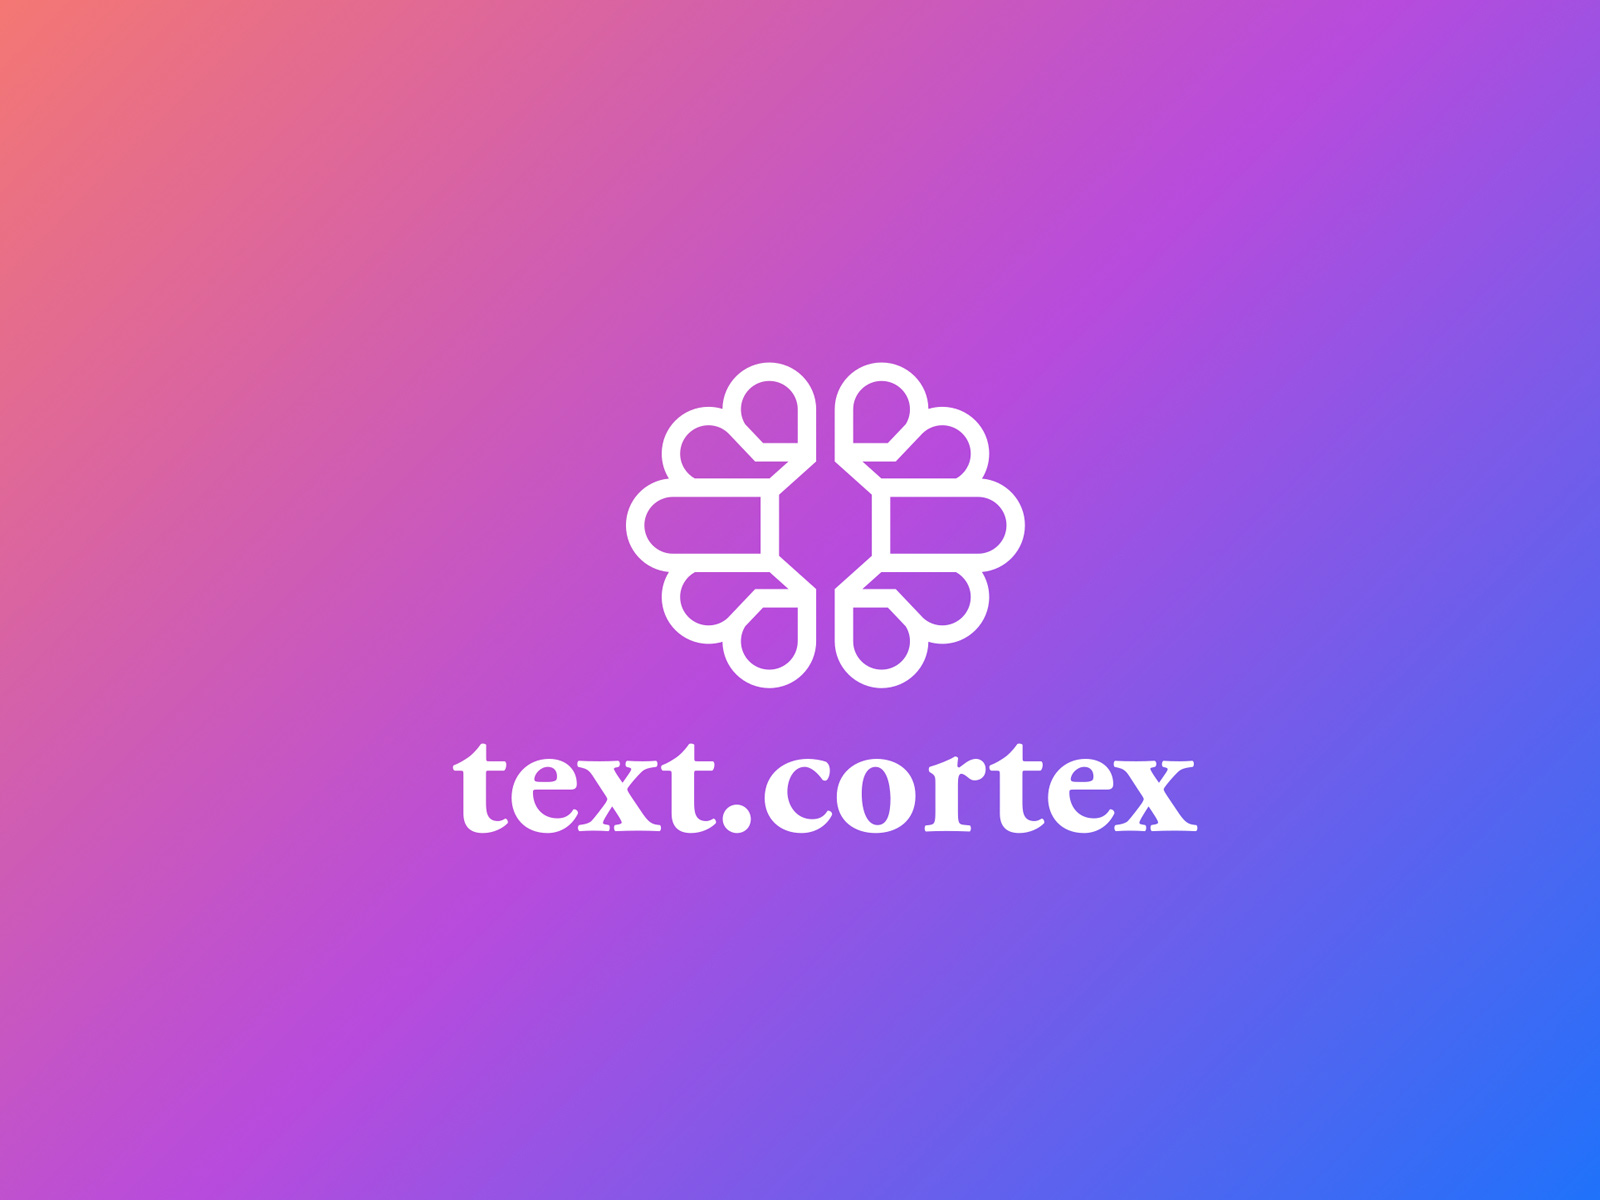 TextCortex AI - AI Copywriting Tool